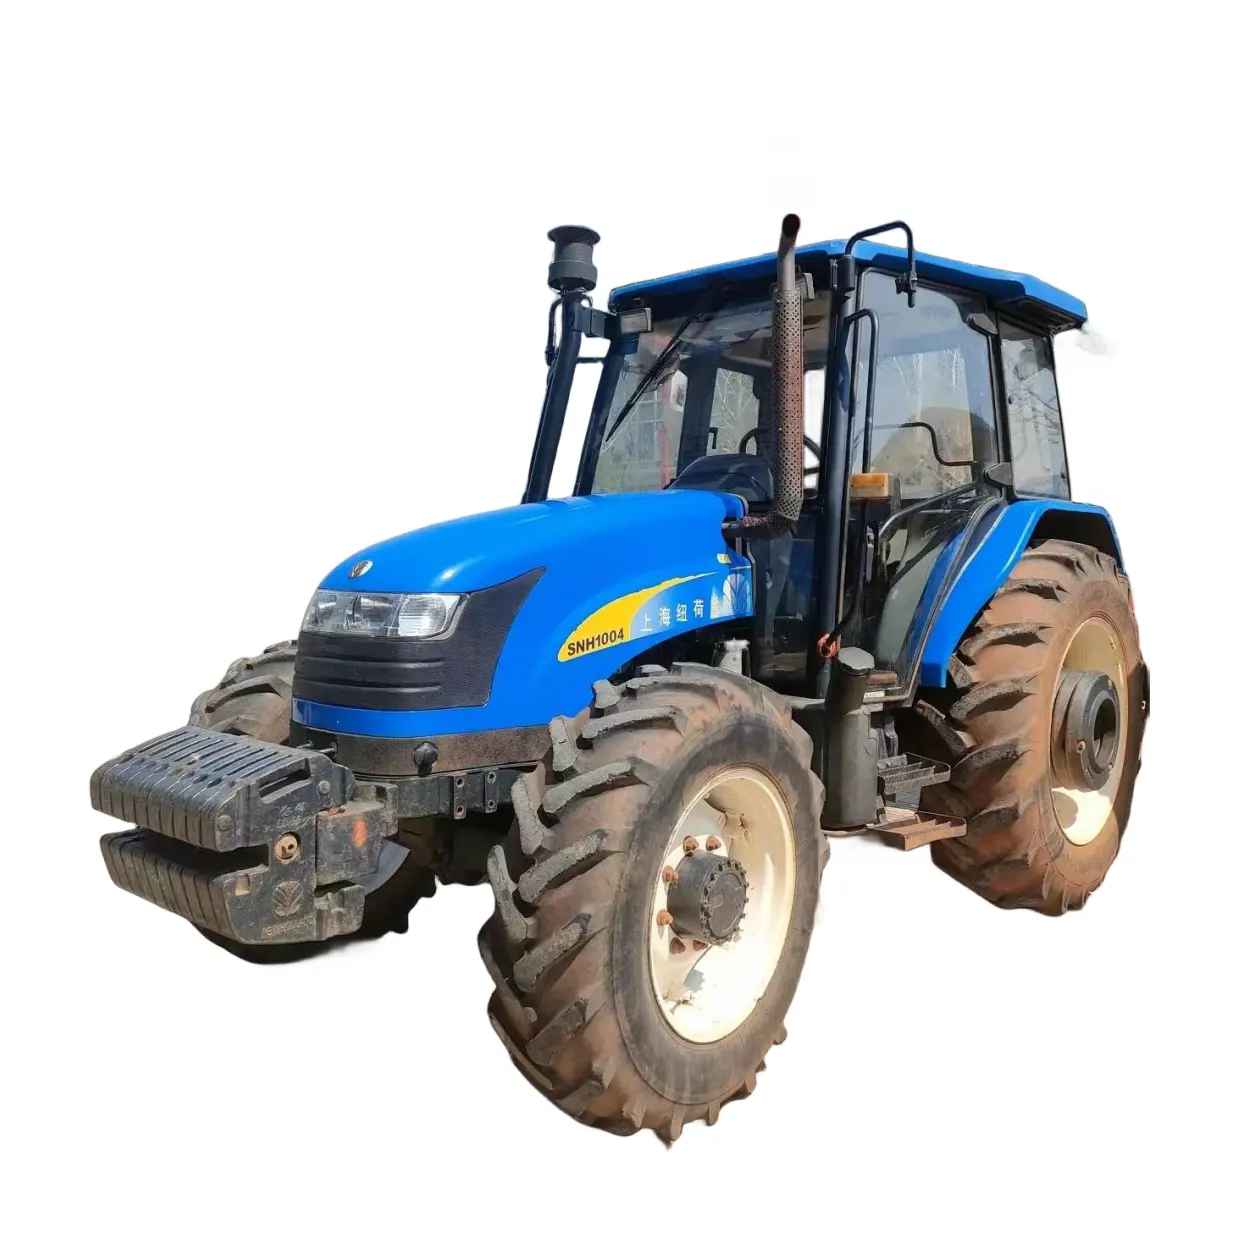 सेकेंड हैंड हॉलैंड SNH1004 कृषि मशीन 1004HP कृषि मशीनरी उपकरण ट्रैक्टर